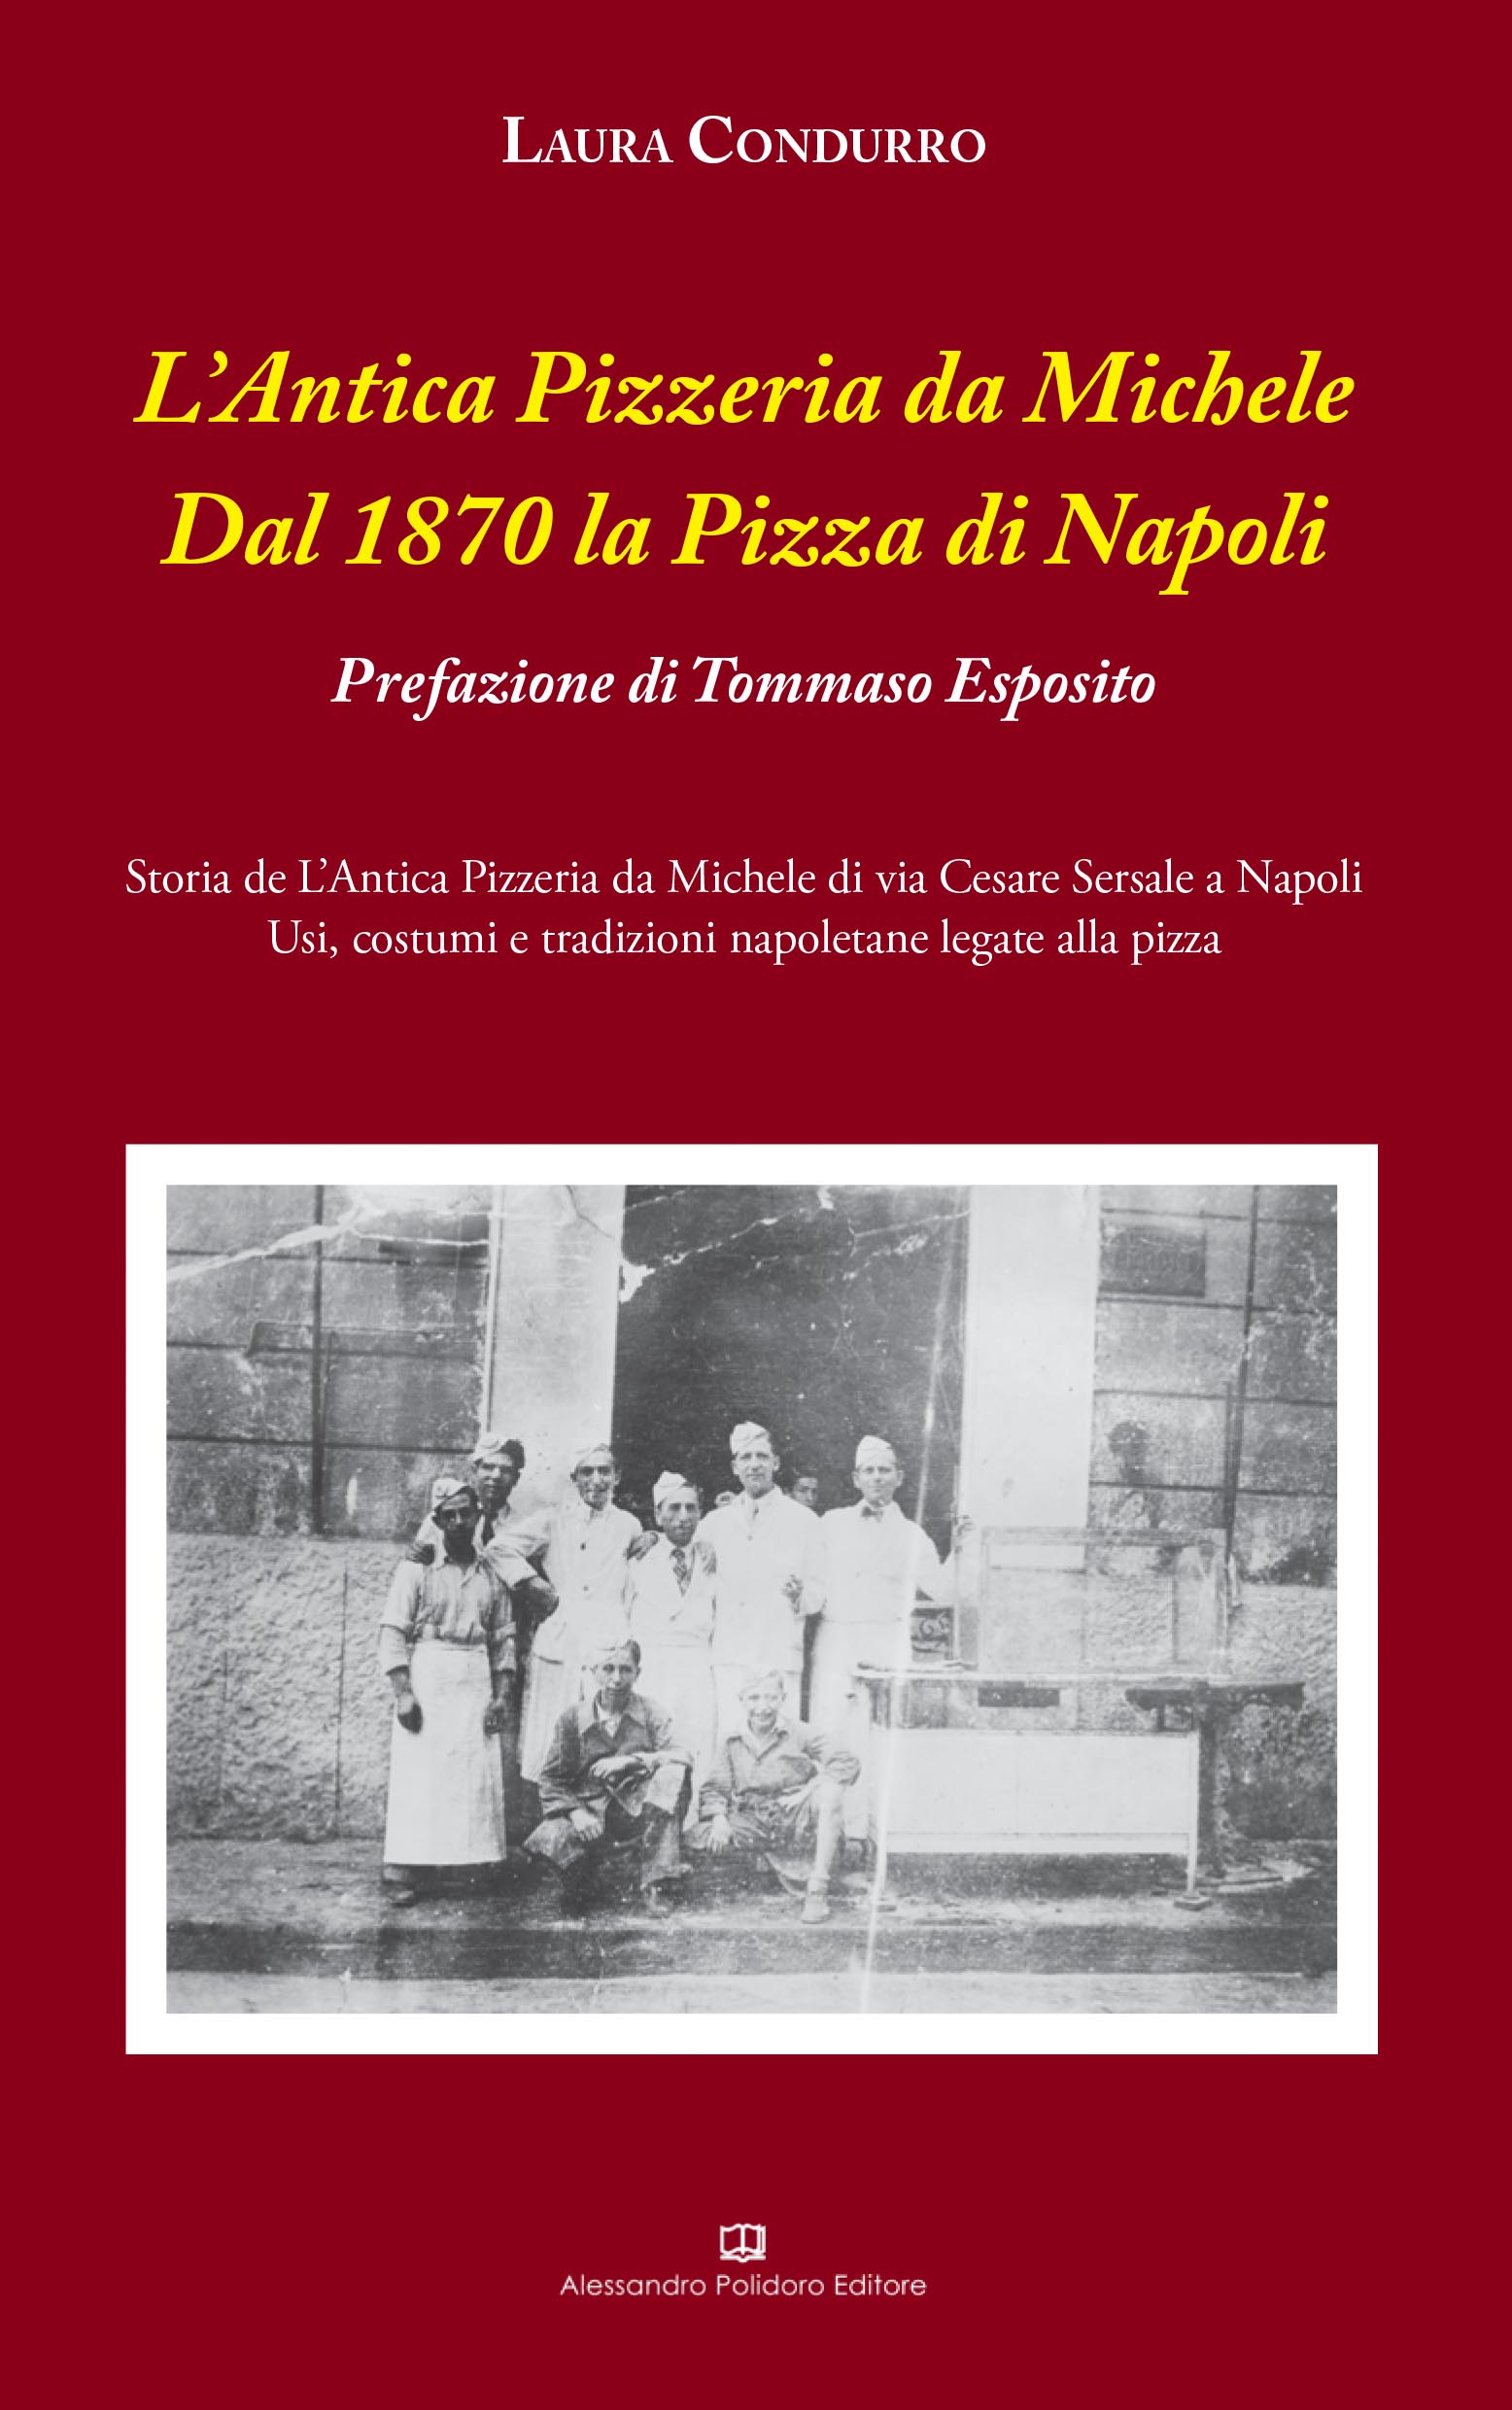 Antica pizzeria da Michele, la sua storia in un libro